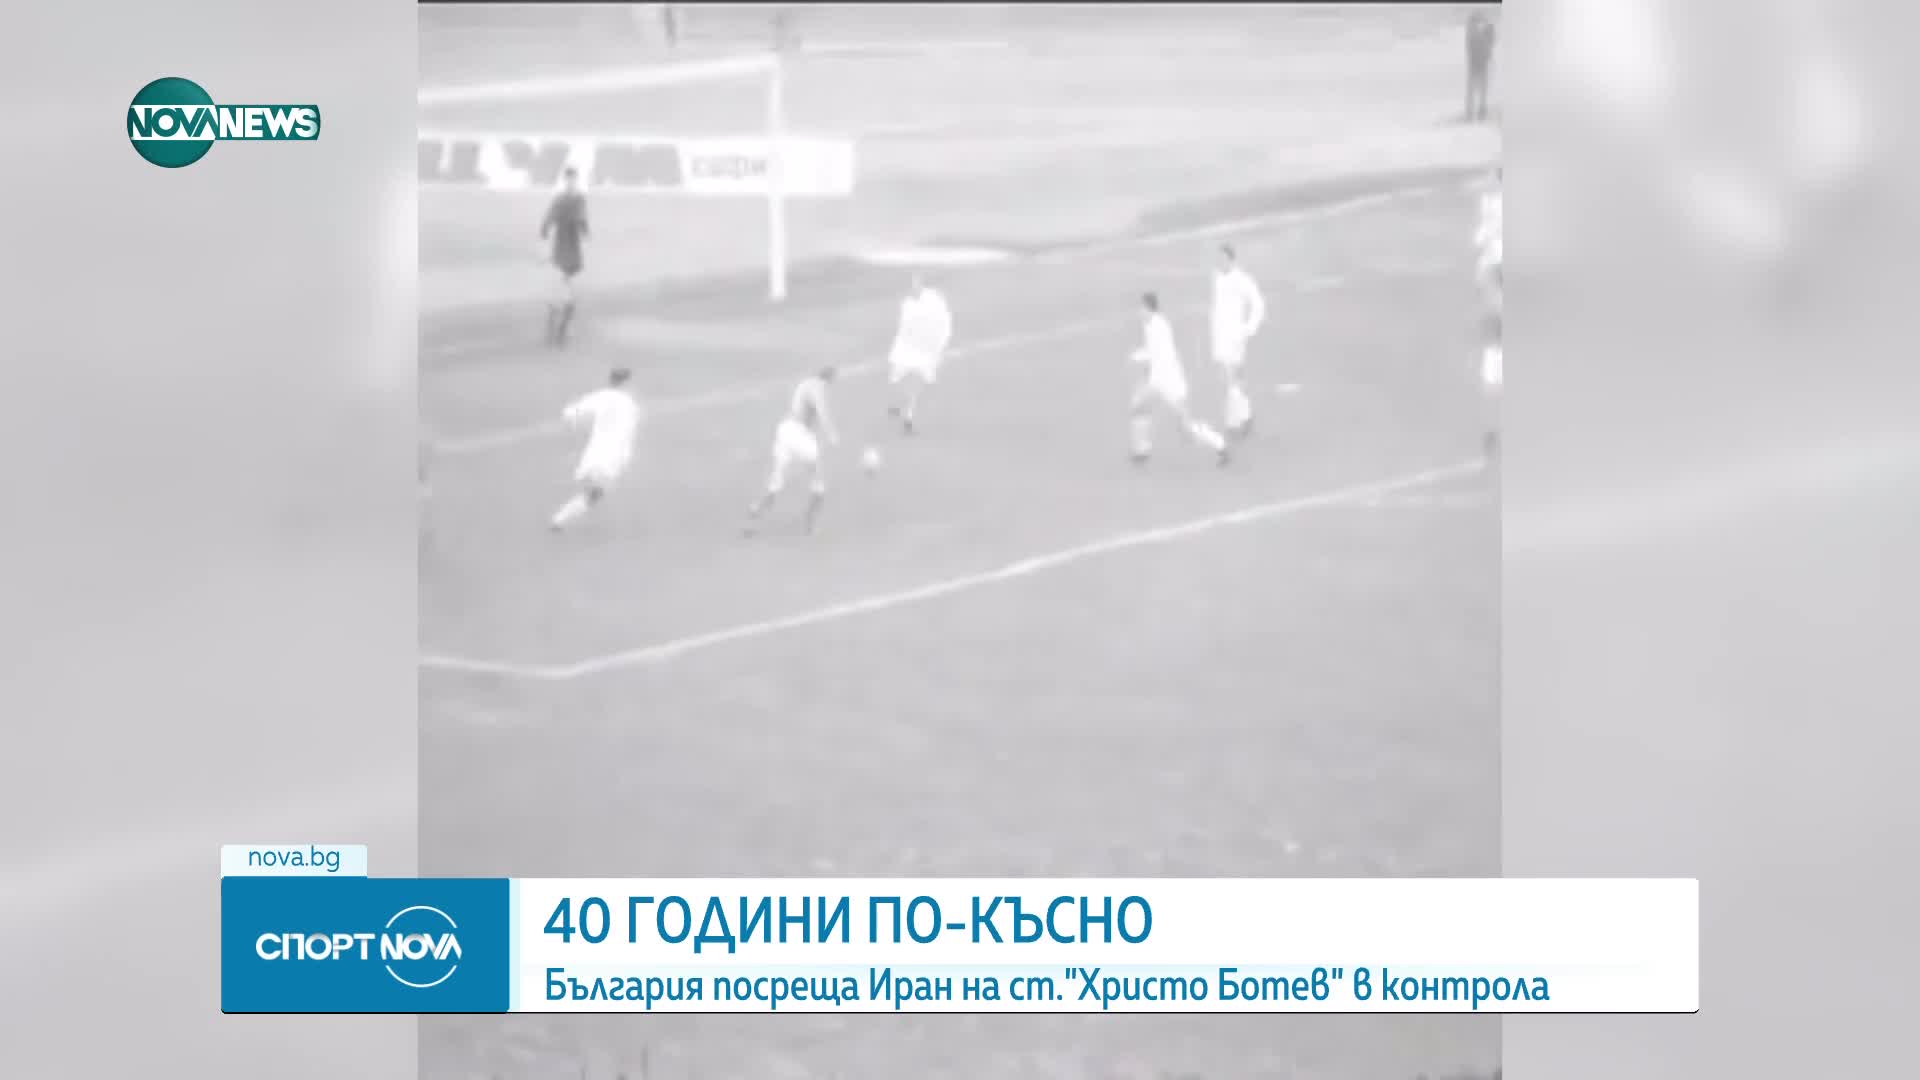 СЛЕД 40 ГОДИНИ: Националният отбор на България отново ще играе мач в Пловдив